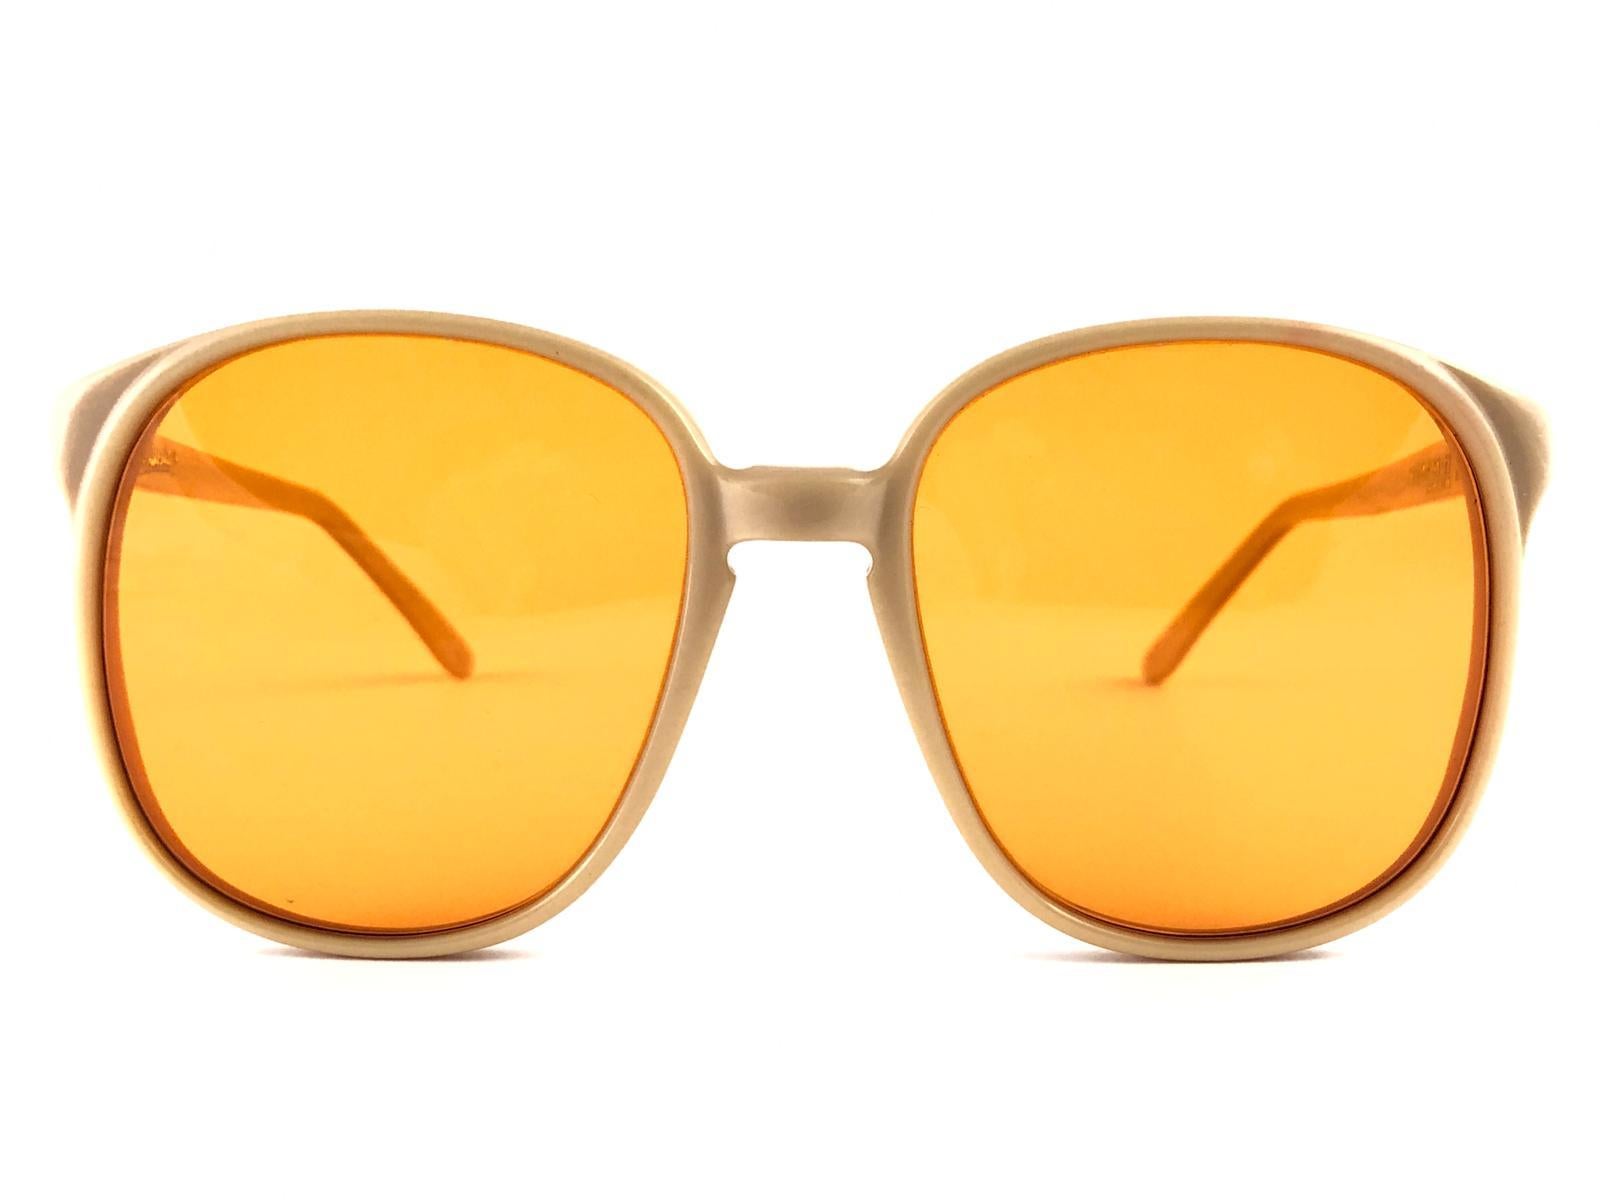 Übergroße Sonnenbrille von Oliver Goldsmith.  

Neuer, ungetragener Rahmen mit einem Paar mandarinenfarbener Gläser.   

 Dieses Paar hat geringe Abnutzungserscheinungen durch die Lagerung.

Handgefertigt in England.


MASSNAHMEN

VORDERSEITE: 13,5